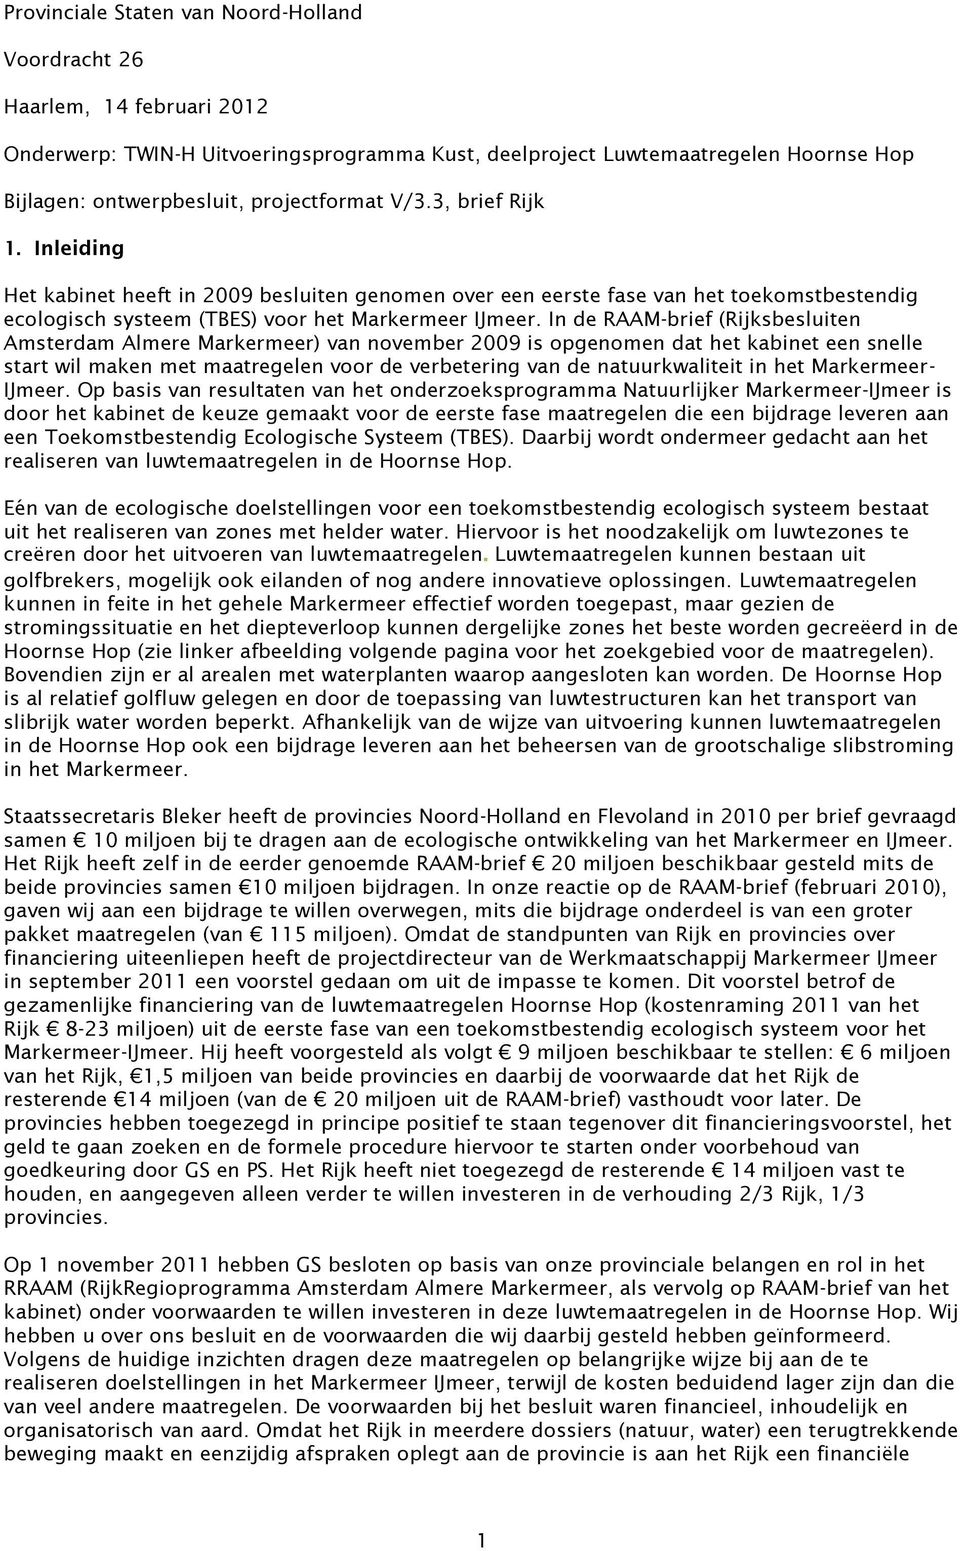 In de RAAM-brief (Rijksbesluiten Amsterdam Almere Markermeer) van november 2009 is opgenomen dat het kabinet een snelle start wil maken met maatregelen voor de verbetering van de natuurkwaliteit in